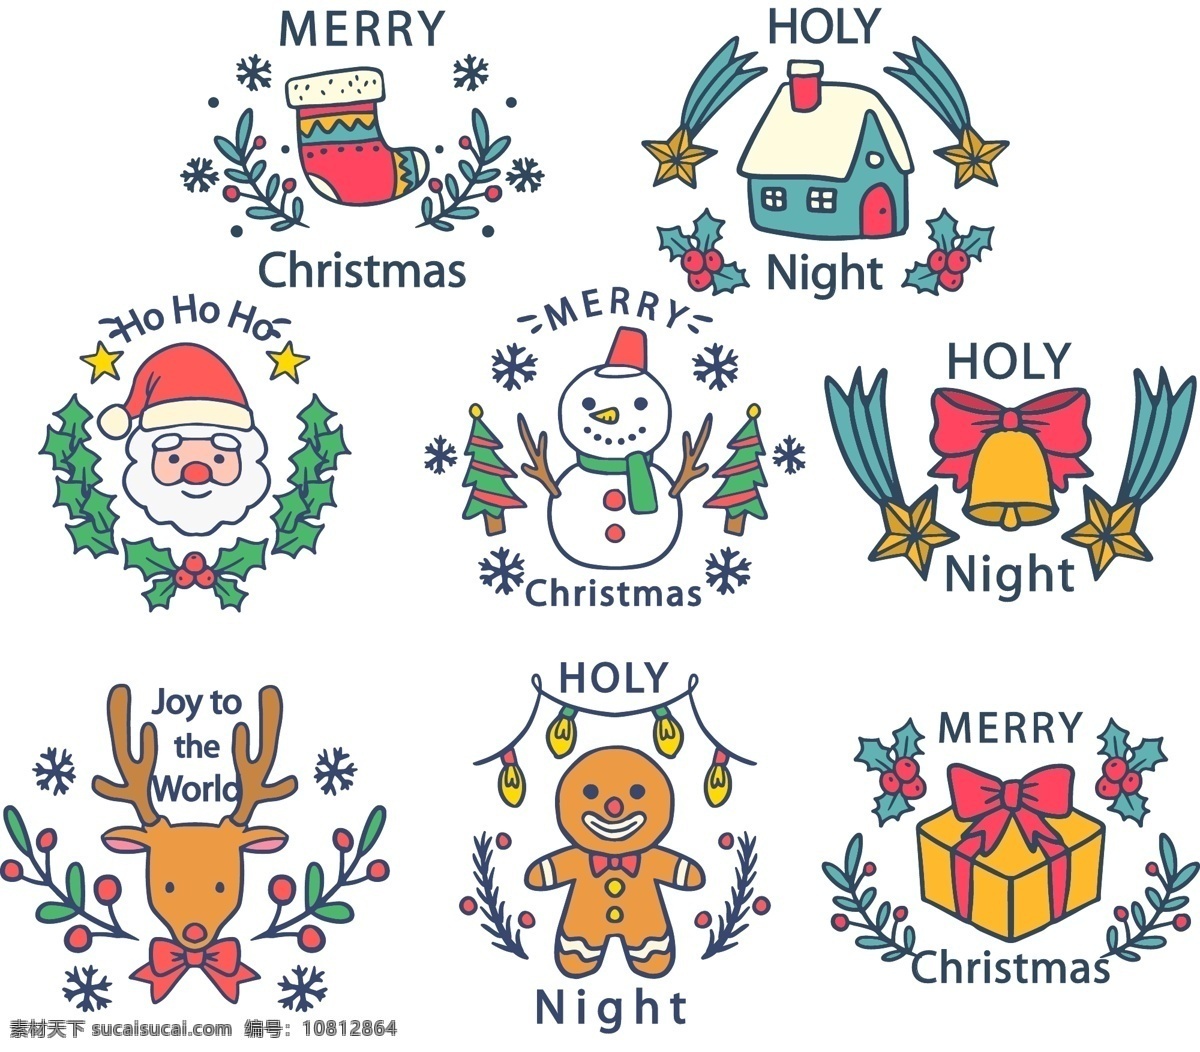 手绘 图案 圣诞节 标签 可爱 房子 矢量素材 圣诞袜 圣诞老人 雪人 驯鹿 姜饼人 铃铛 礼物 英文